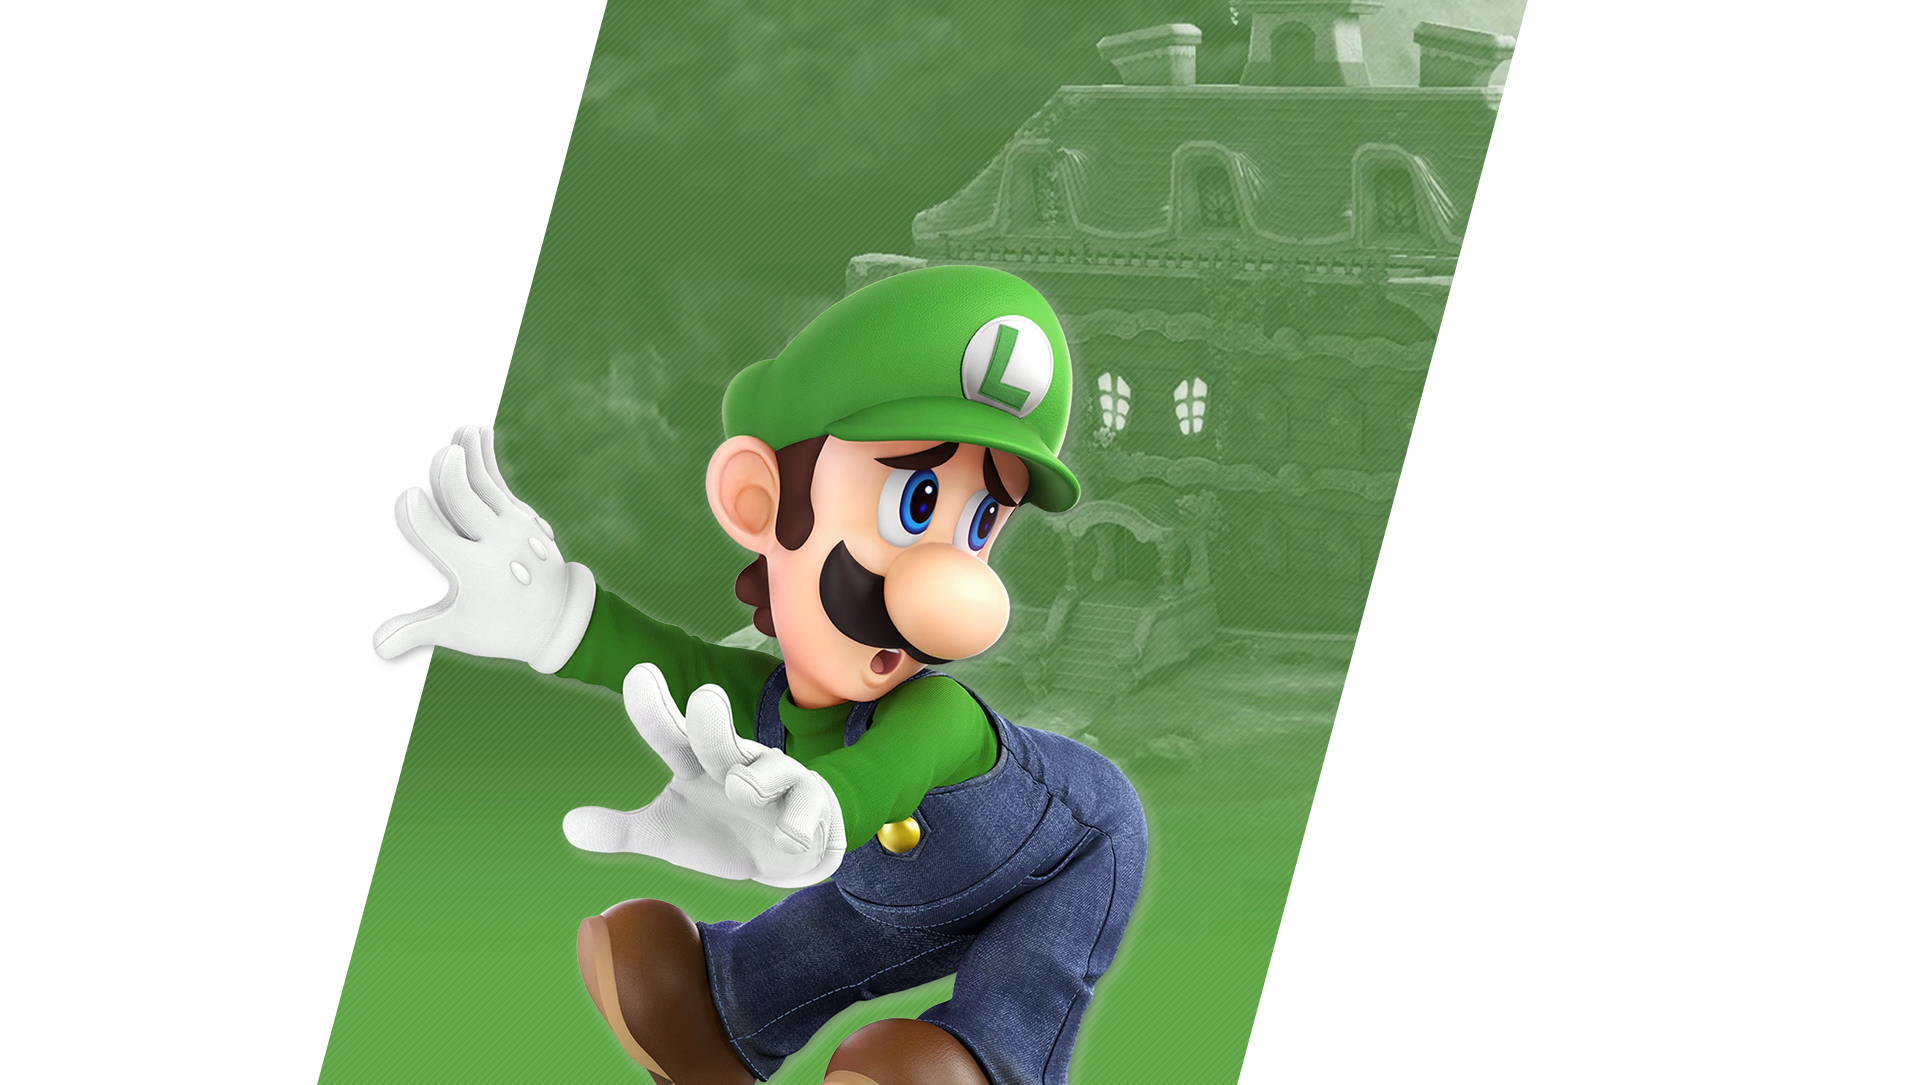 Luigi muhlach